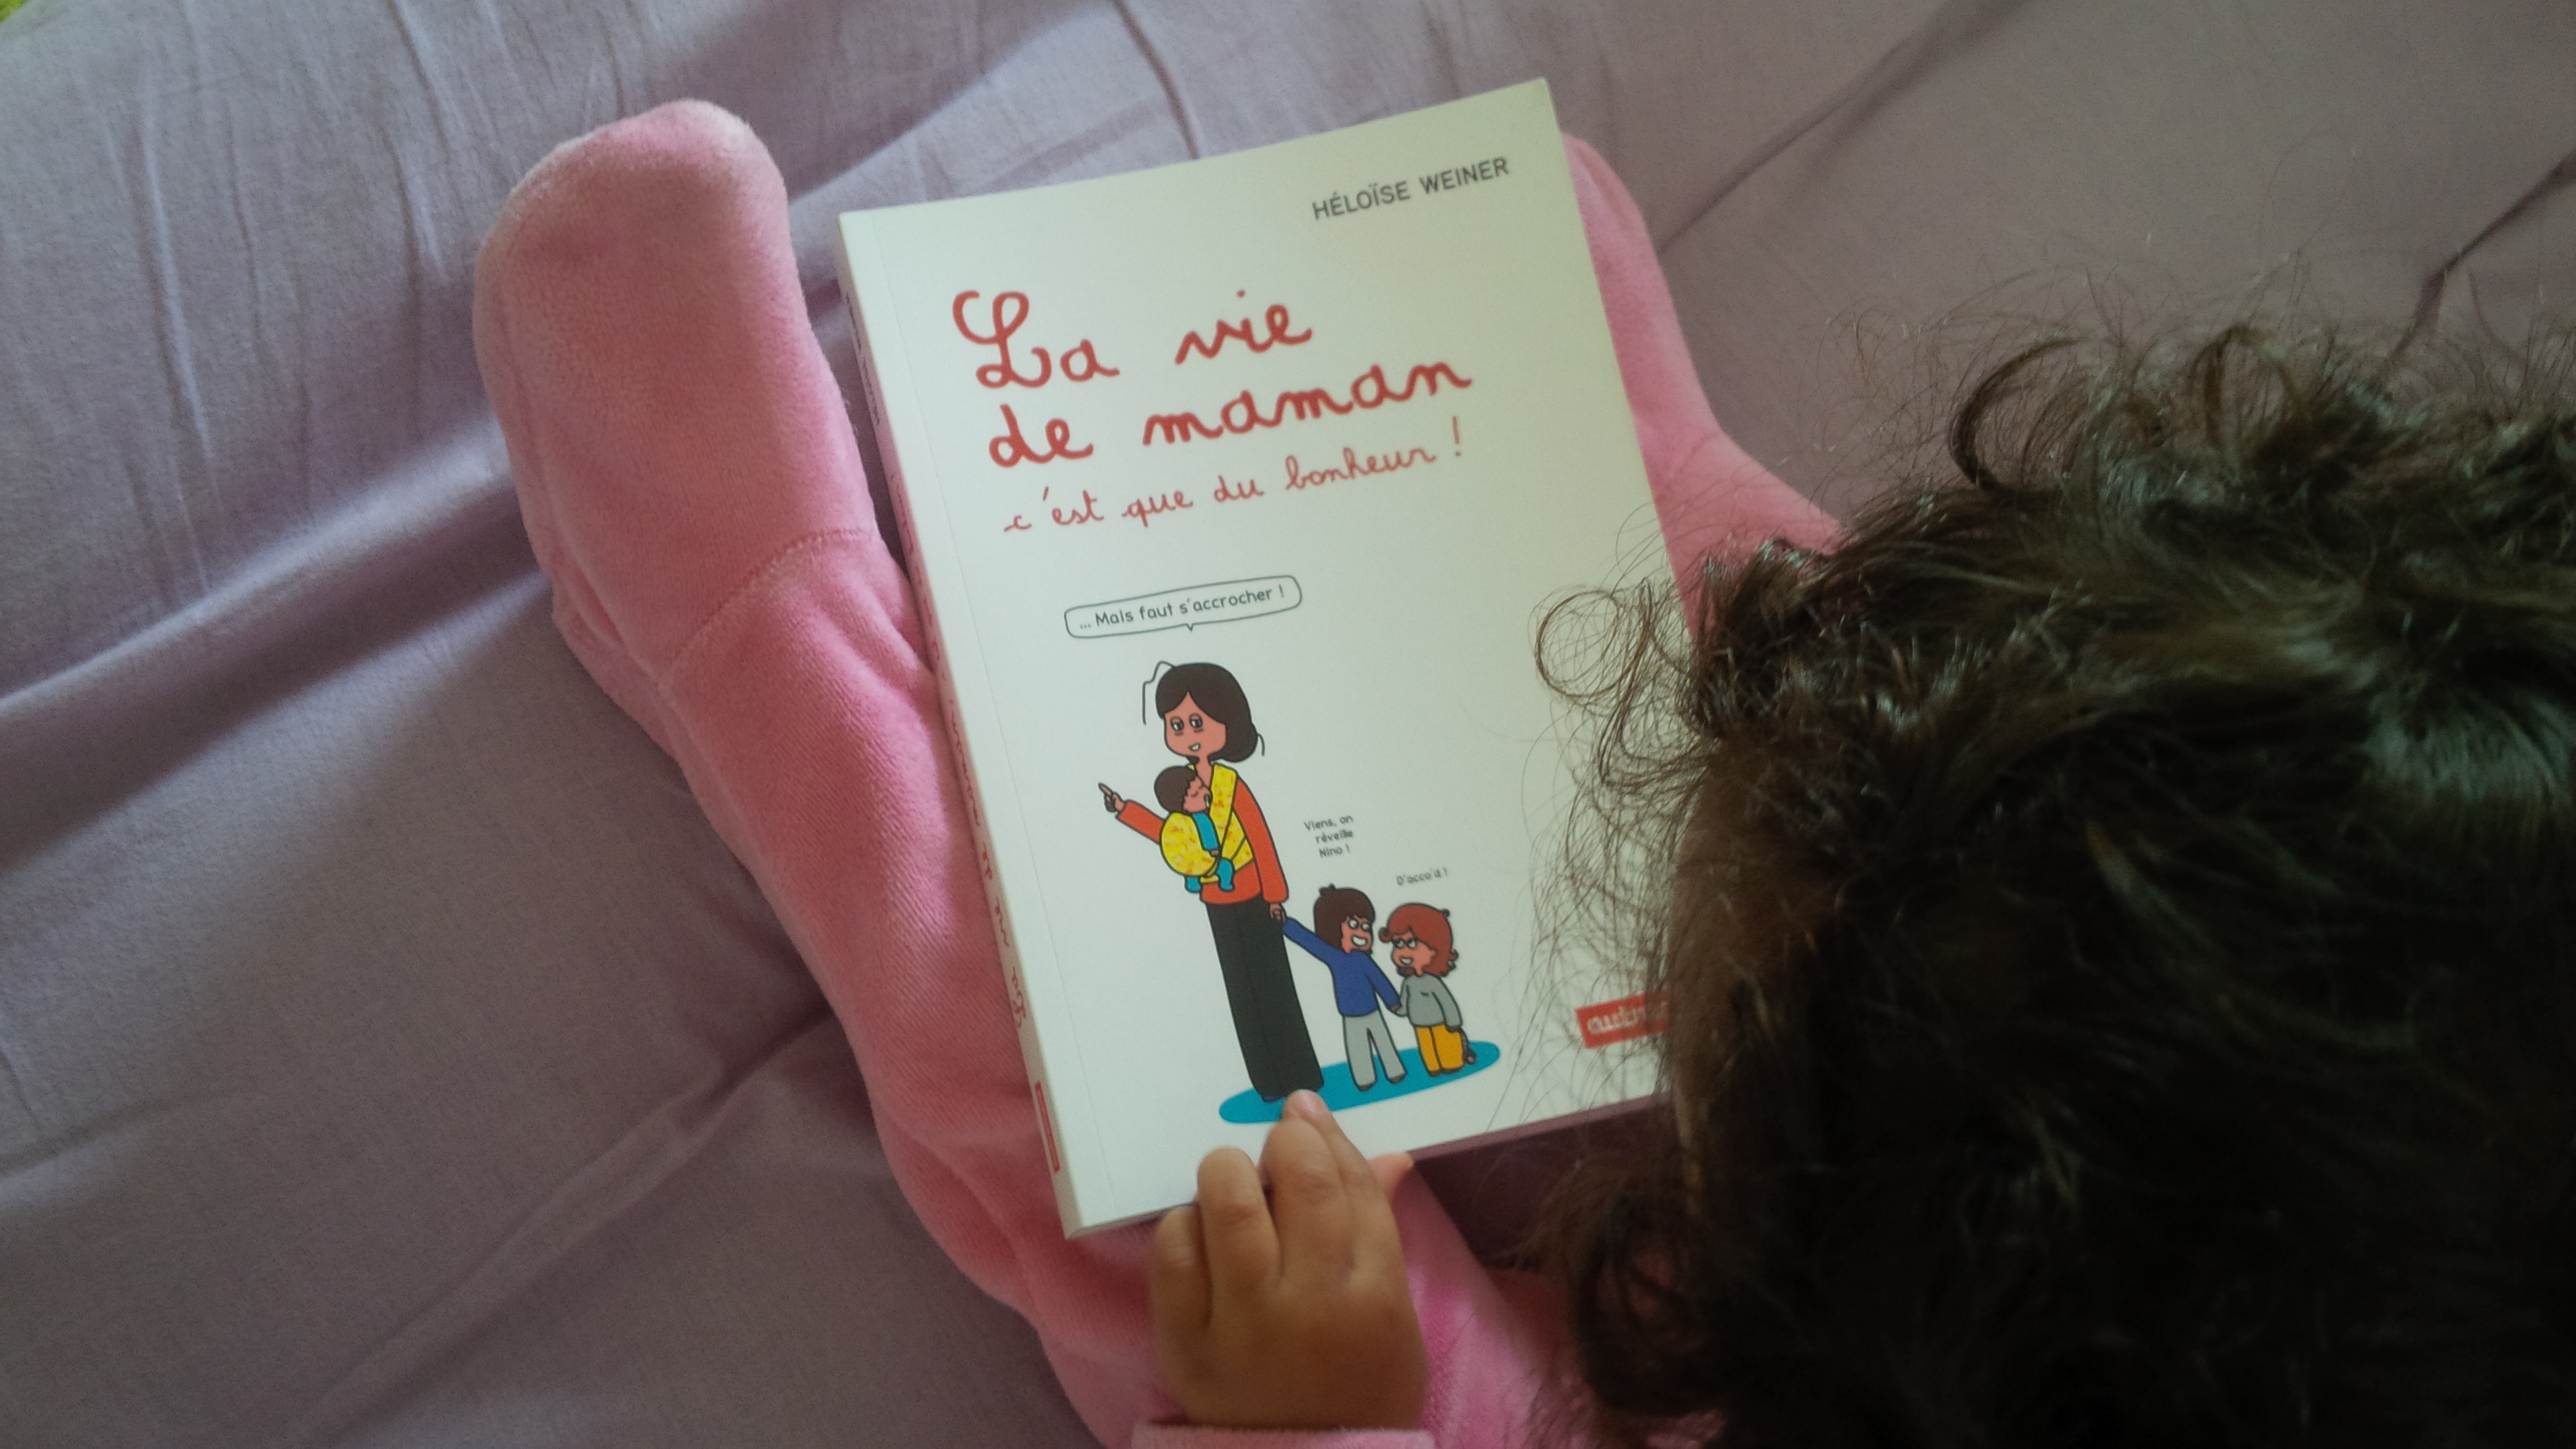 Livre n°1 : "La vie de maman c'est que du bonheur" par Héloïse Weiner